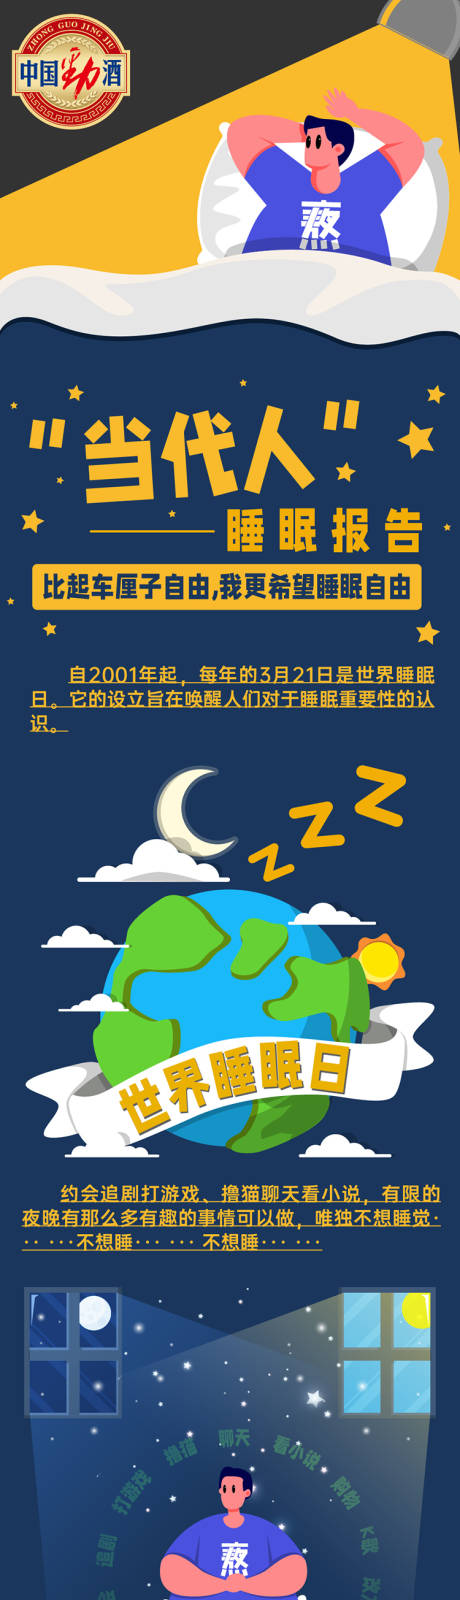 国际睡眠日借势海报